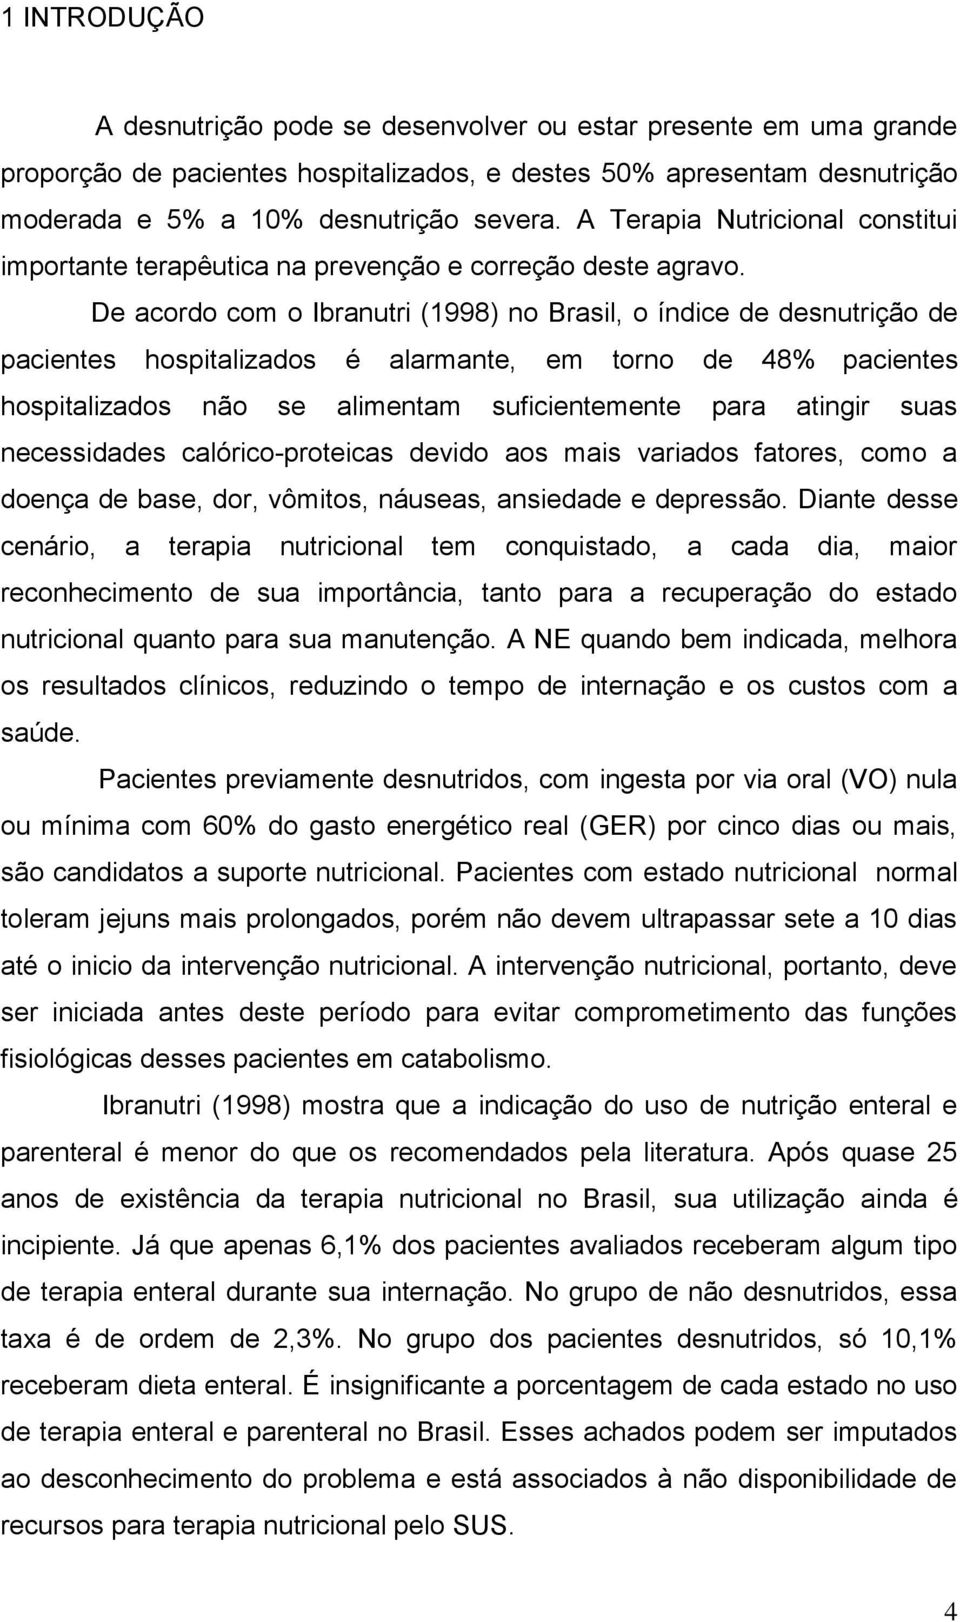 De acordo com o Ibranutri (1998) no Brasil, o índice de desnutrição de pacientes hospitalizados é alarmante, em torno de 48% pacientes hospitalizados não se alimentam suficientemente para atingir